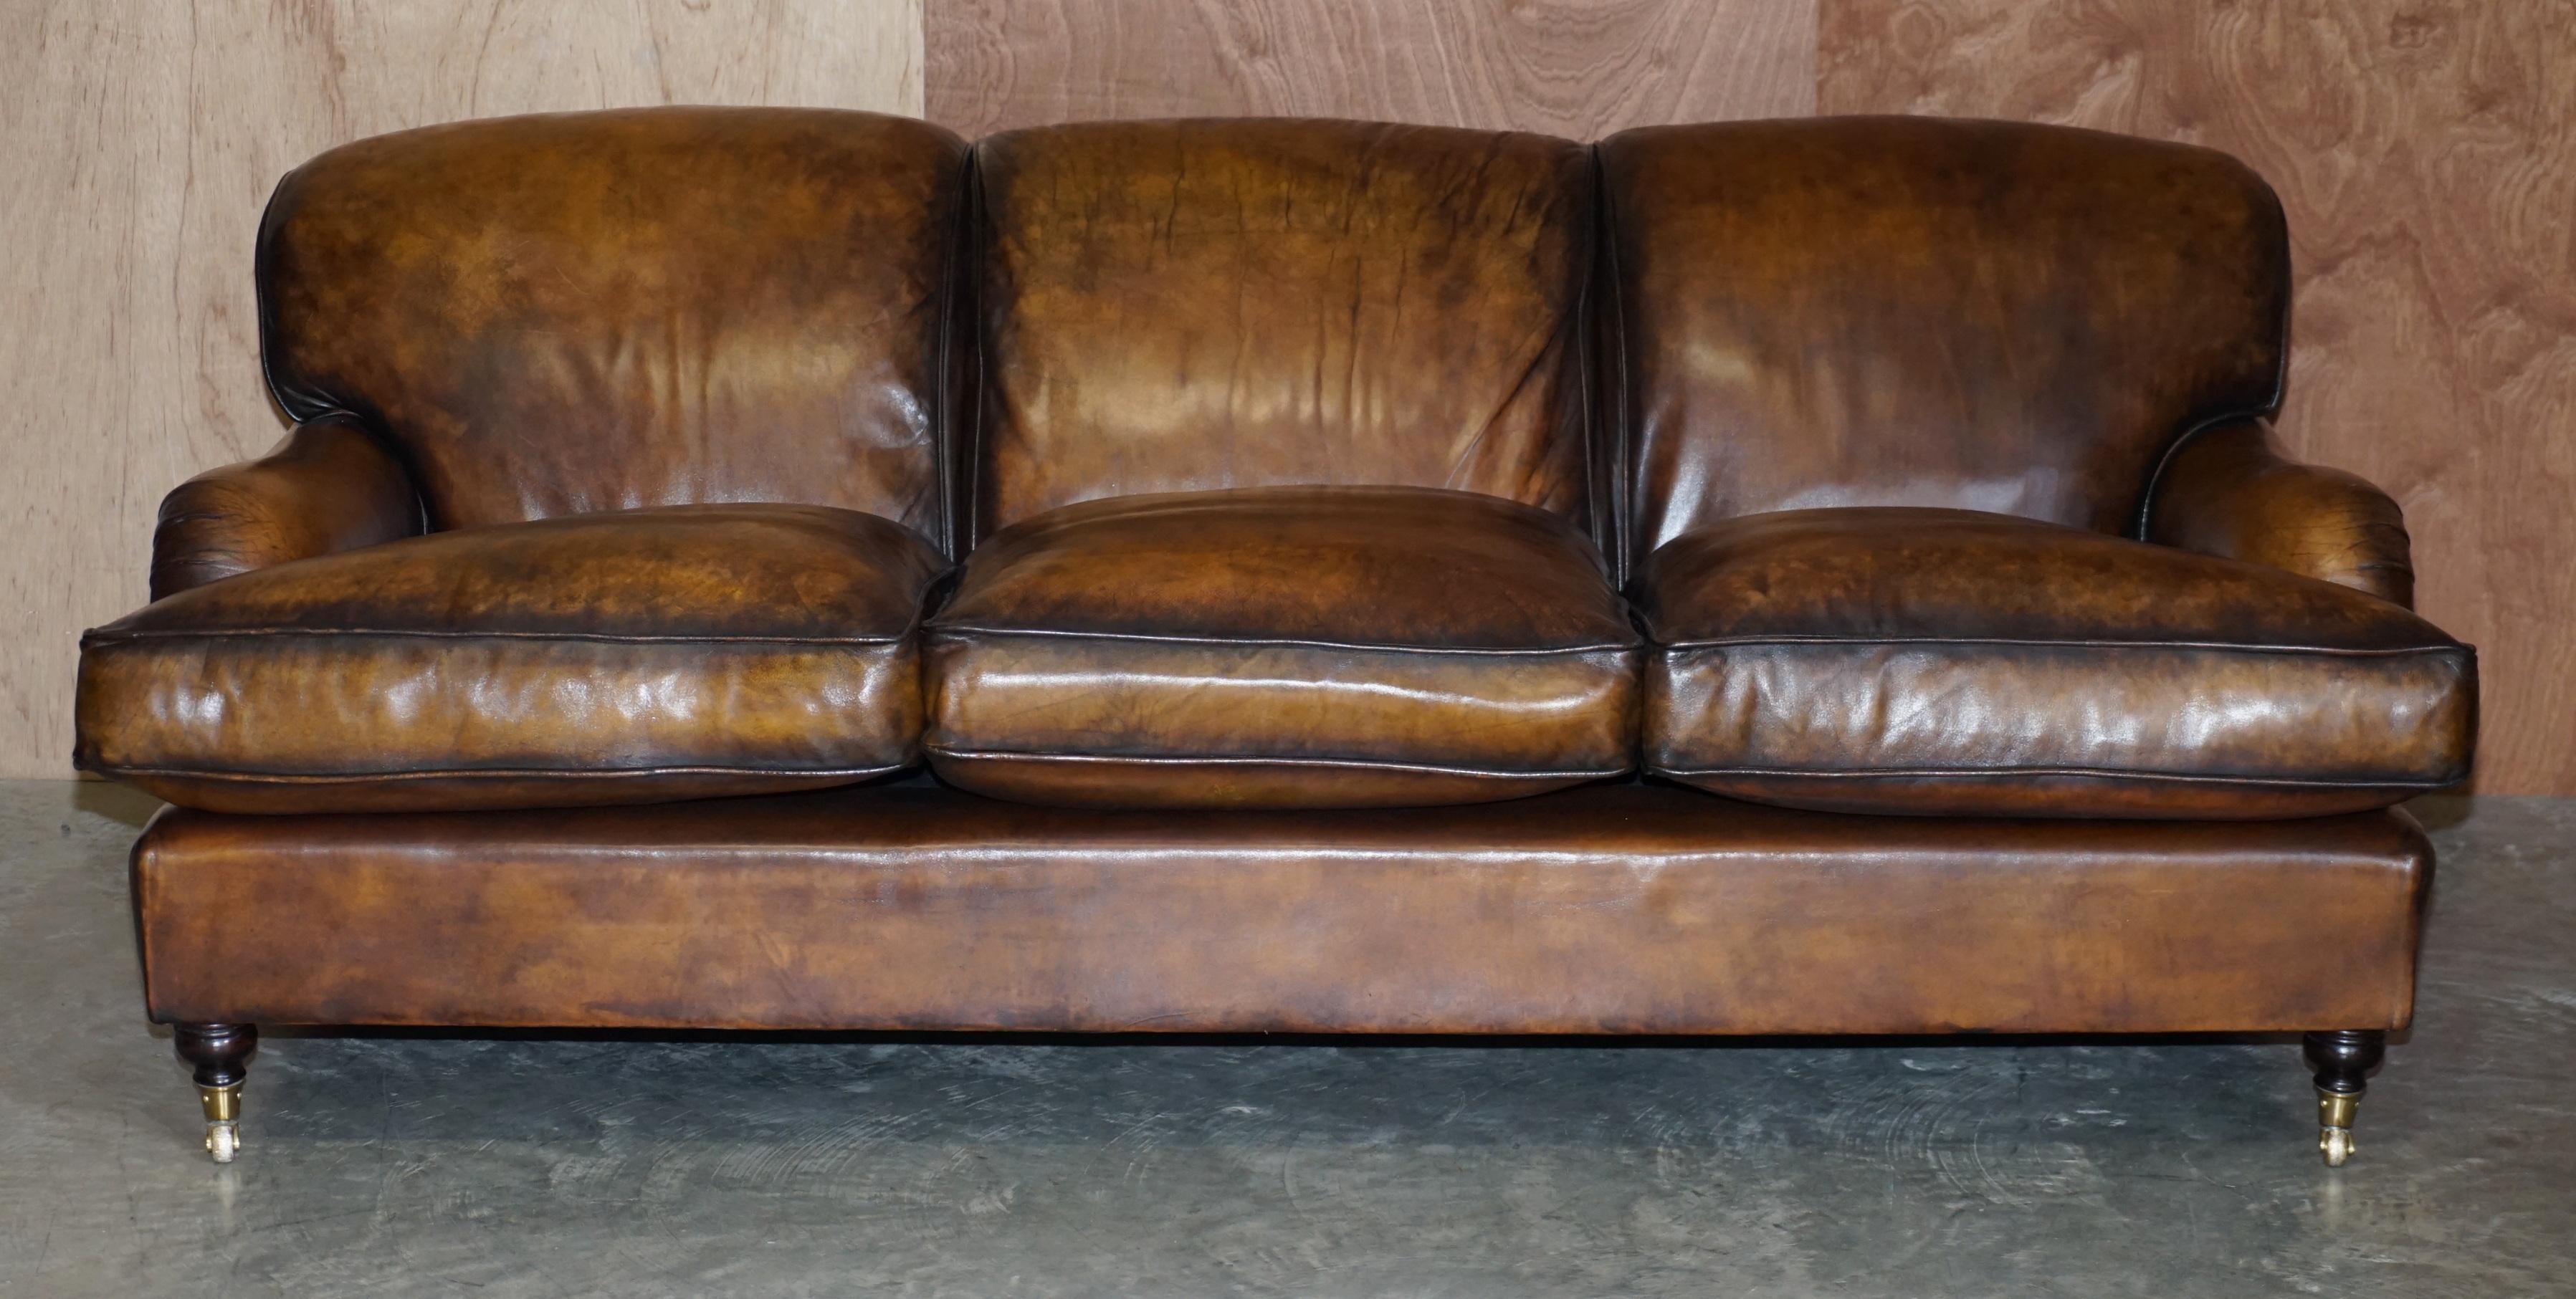 Wir freuen uns, dieses schöne, vollständig restaurierte, handgefärbte braune Ledersofa im Stil von Howard & Son mit drei Sitzplätzen und überfüllten Federkissen zum Verkauf anzubieten.

Ich habe ein passendes Zweisitzer-Sofa, das jetzt bei den